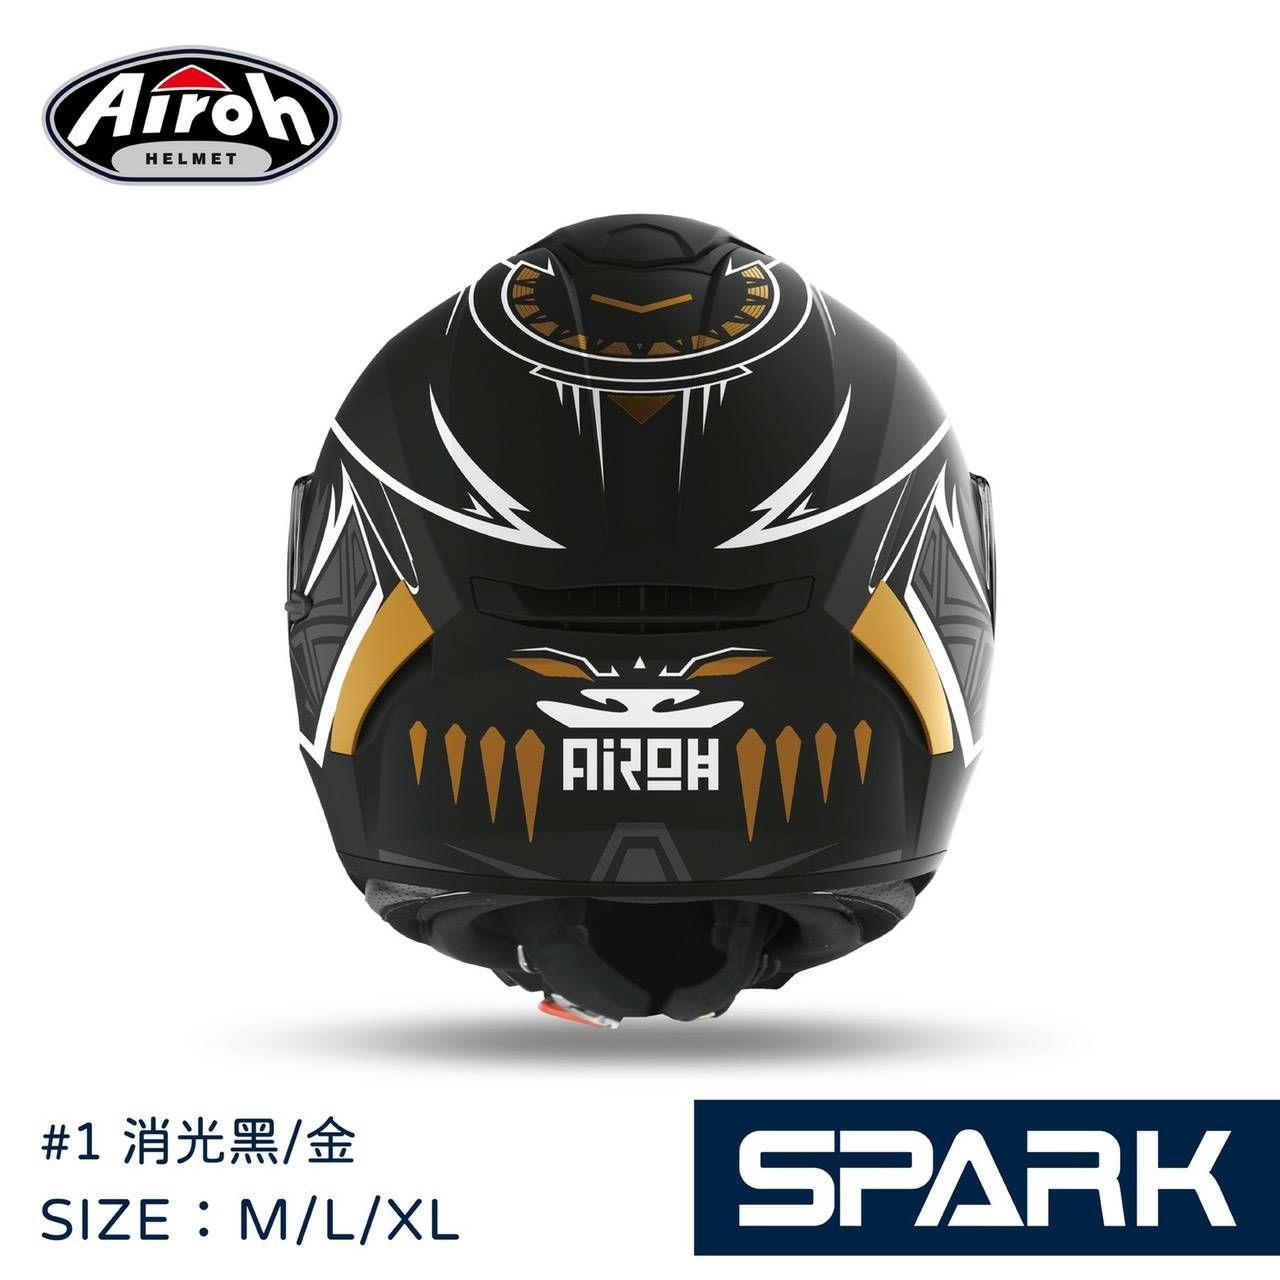 SPARK【全罩式】低調奢華, 【AIROH】義大利品牌安全帽商品推薦